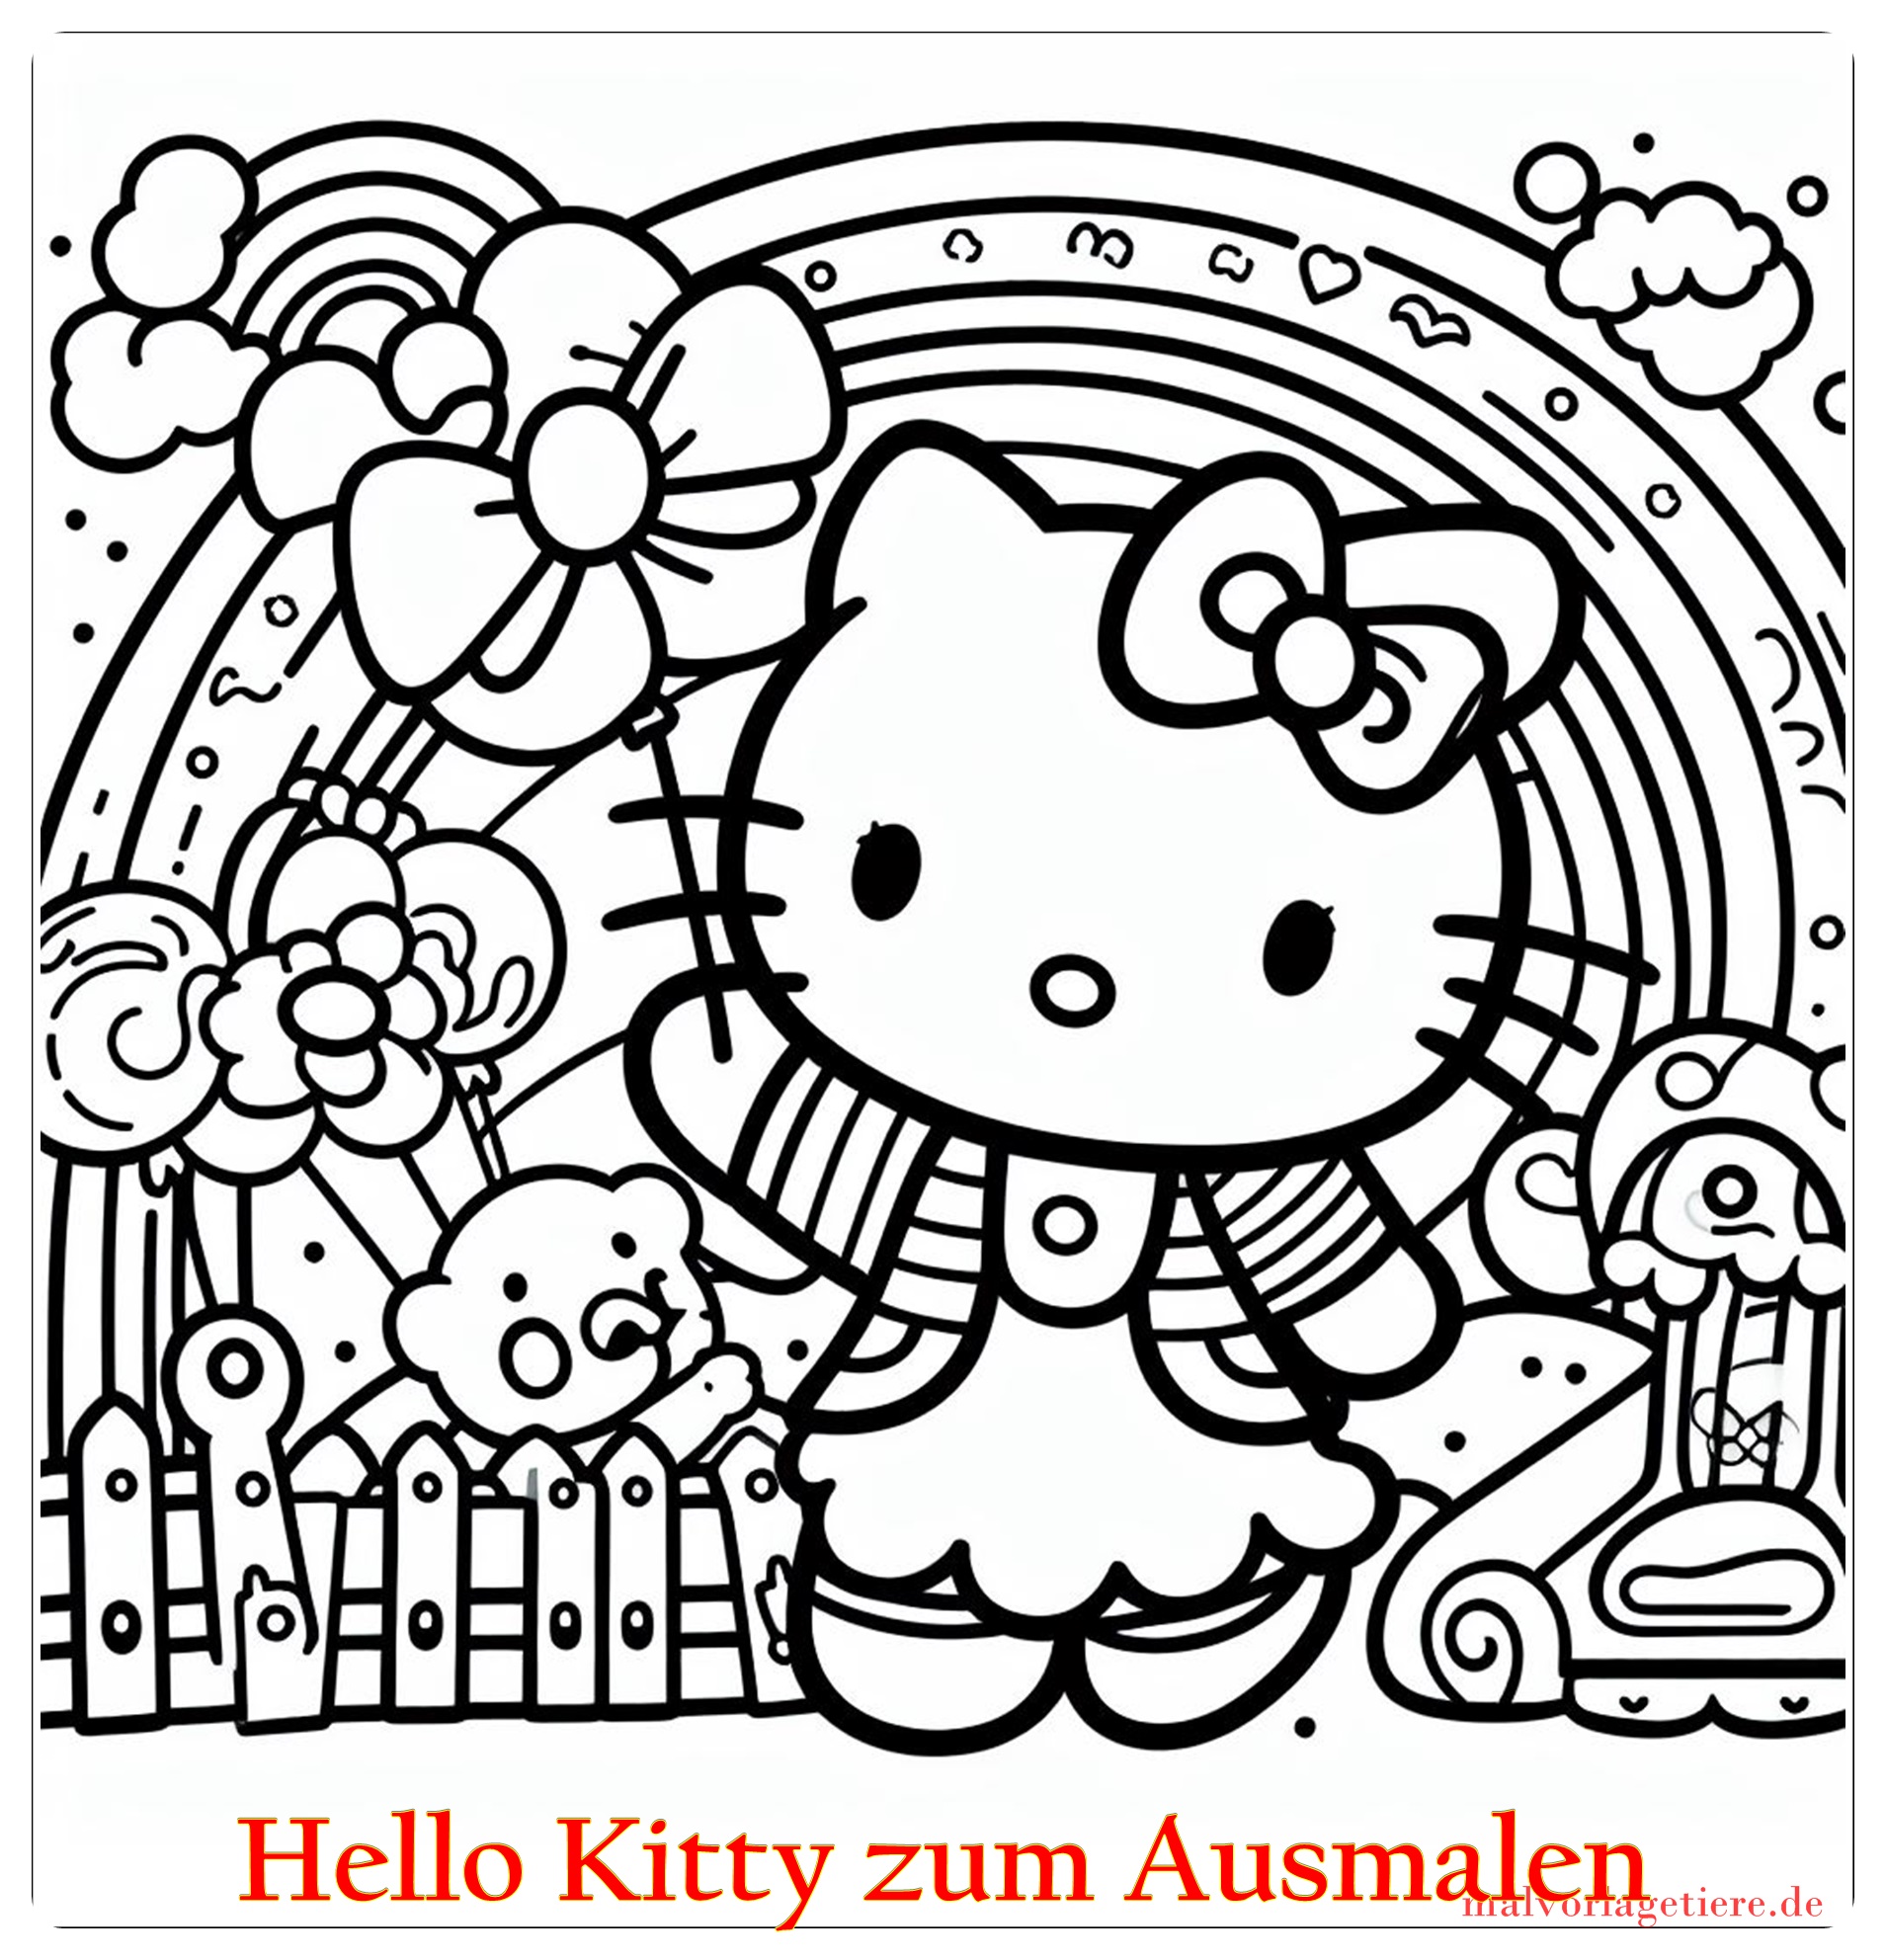 Hello Kitty zum Ausmalen 02 by malvorlagetiere